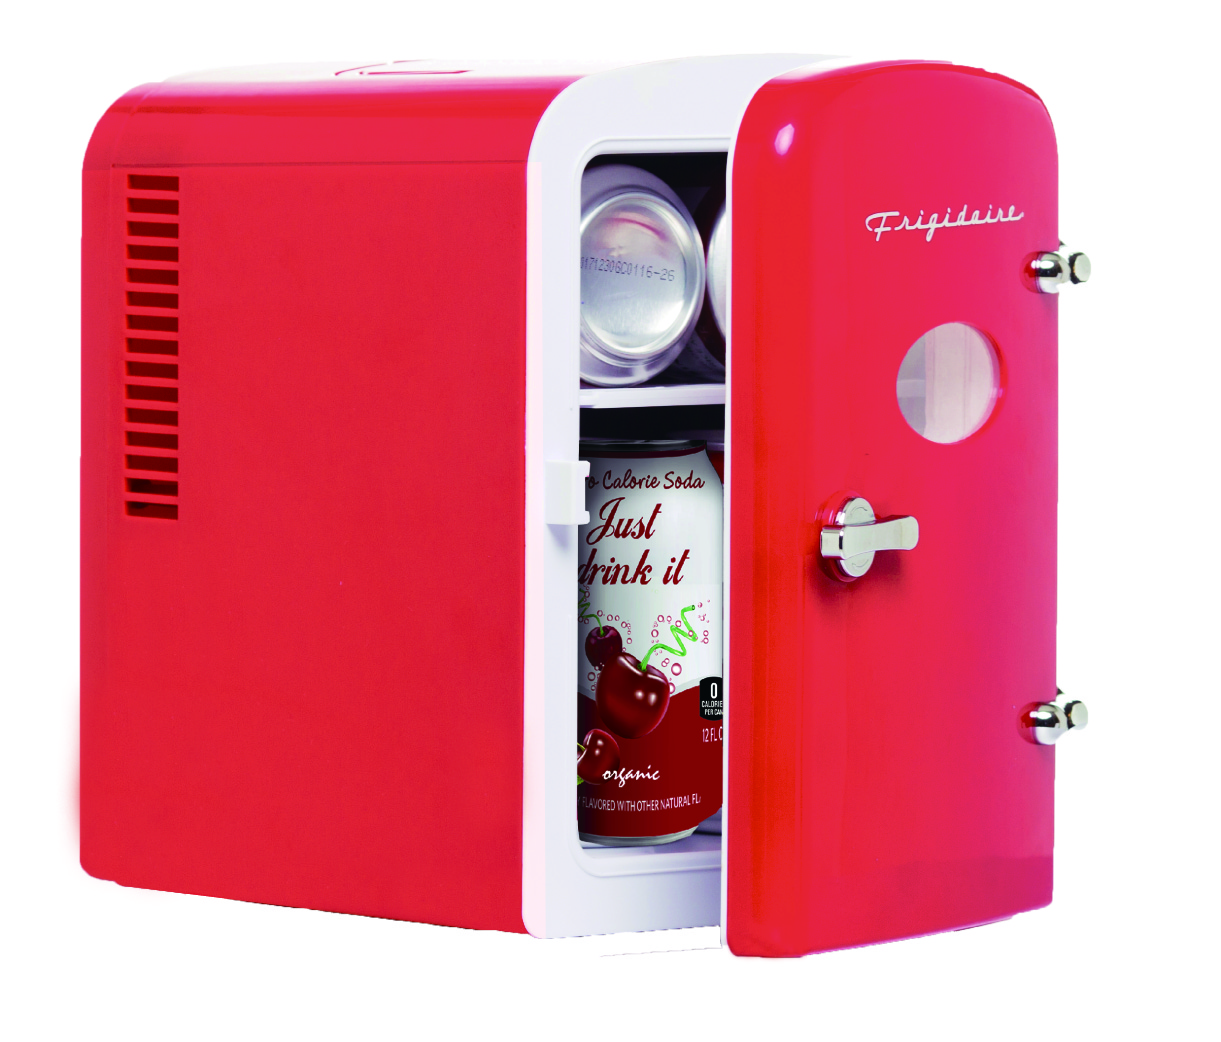 Frigidaire Portable Retro 6-can Mini Fridge EFMIS129, Red - image 4 of 11